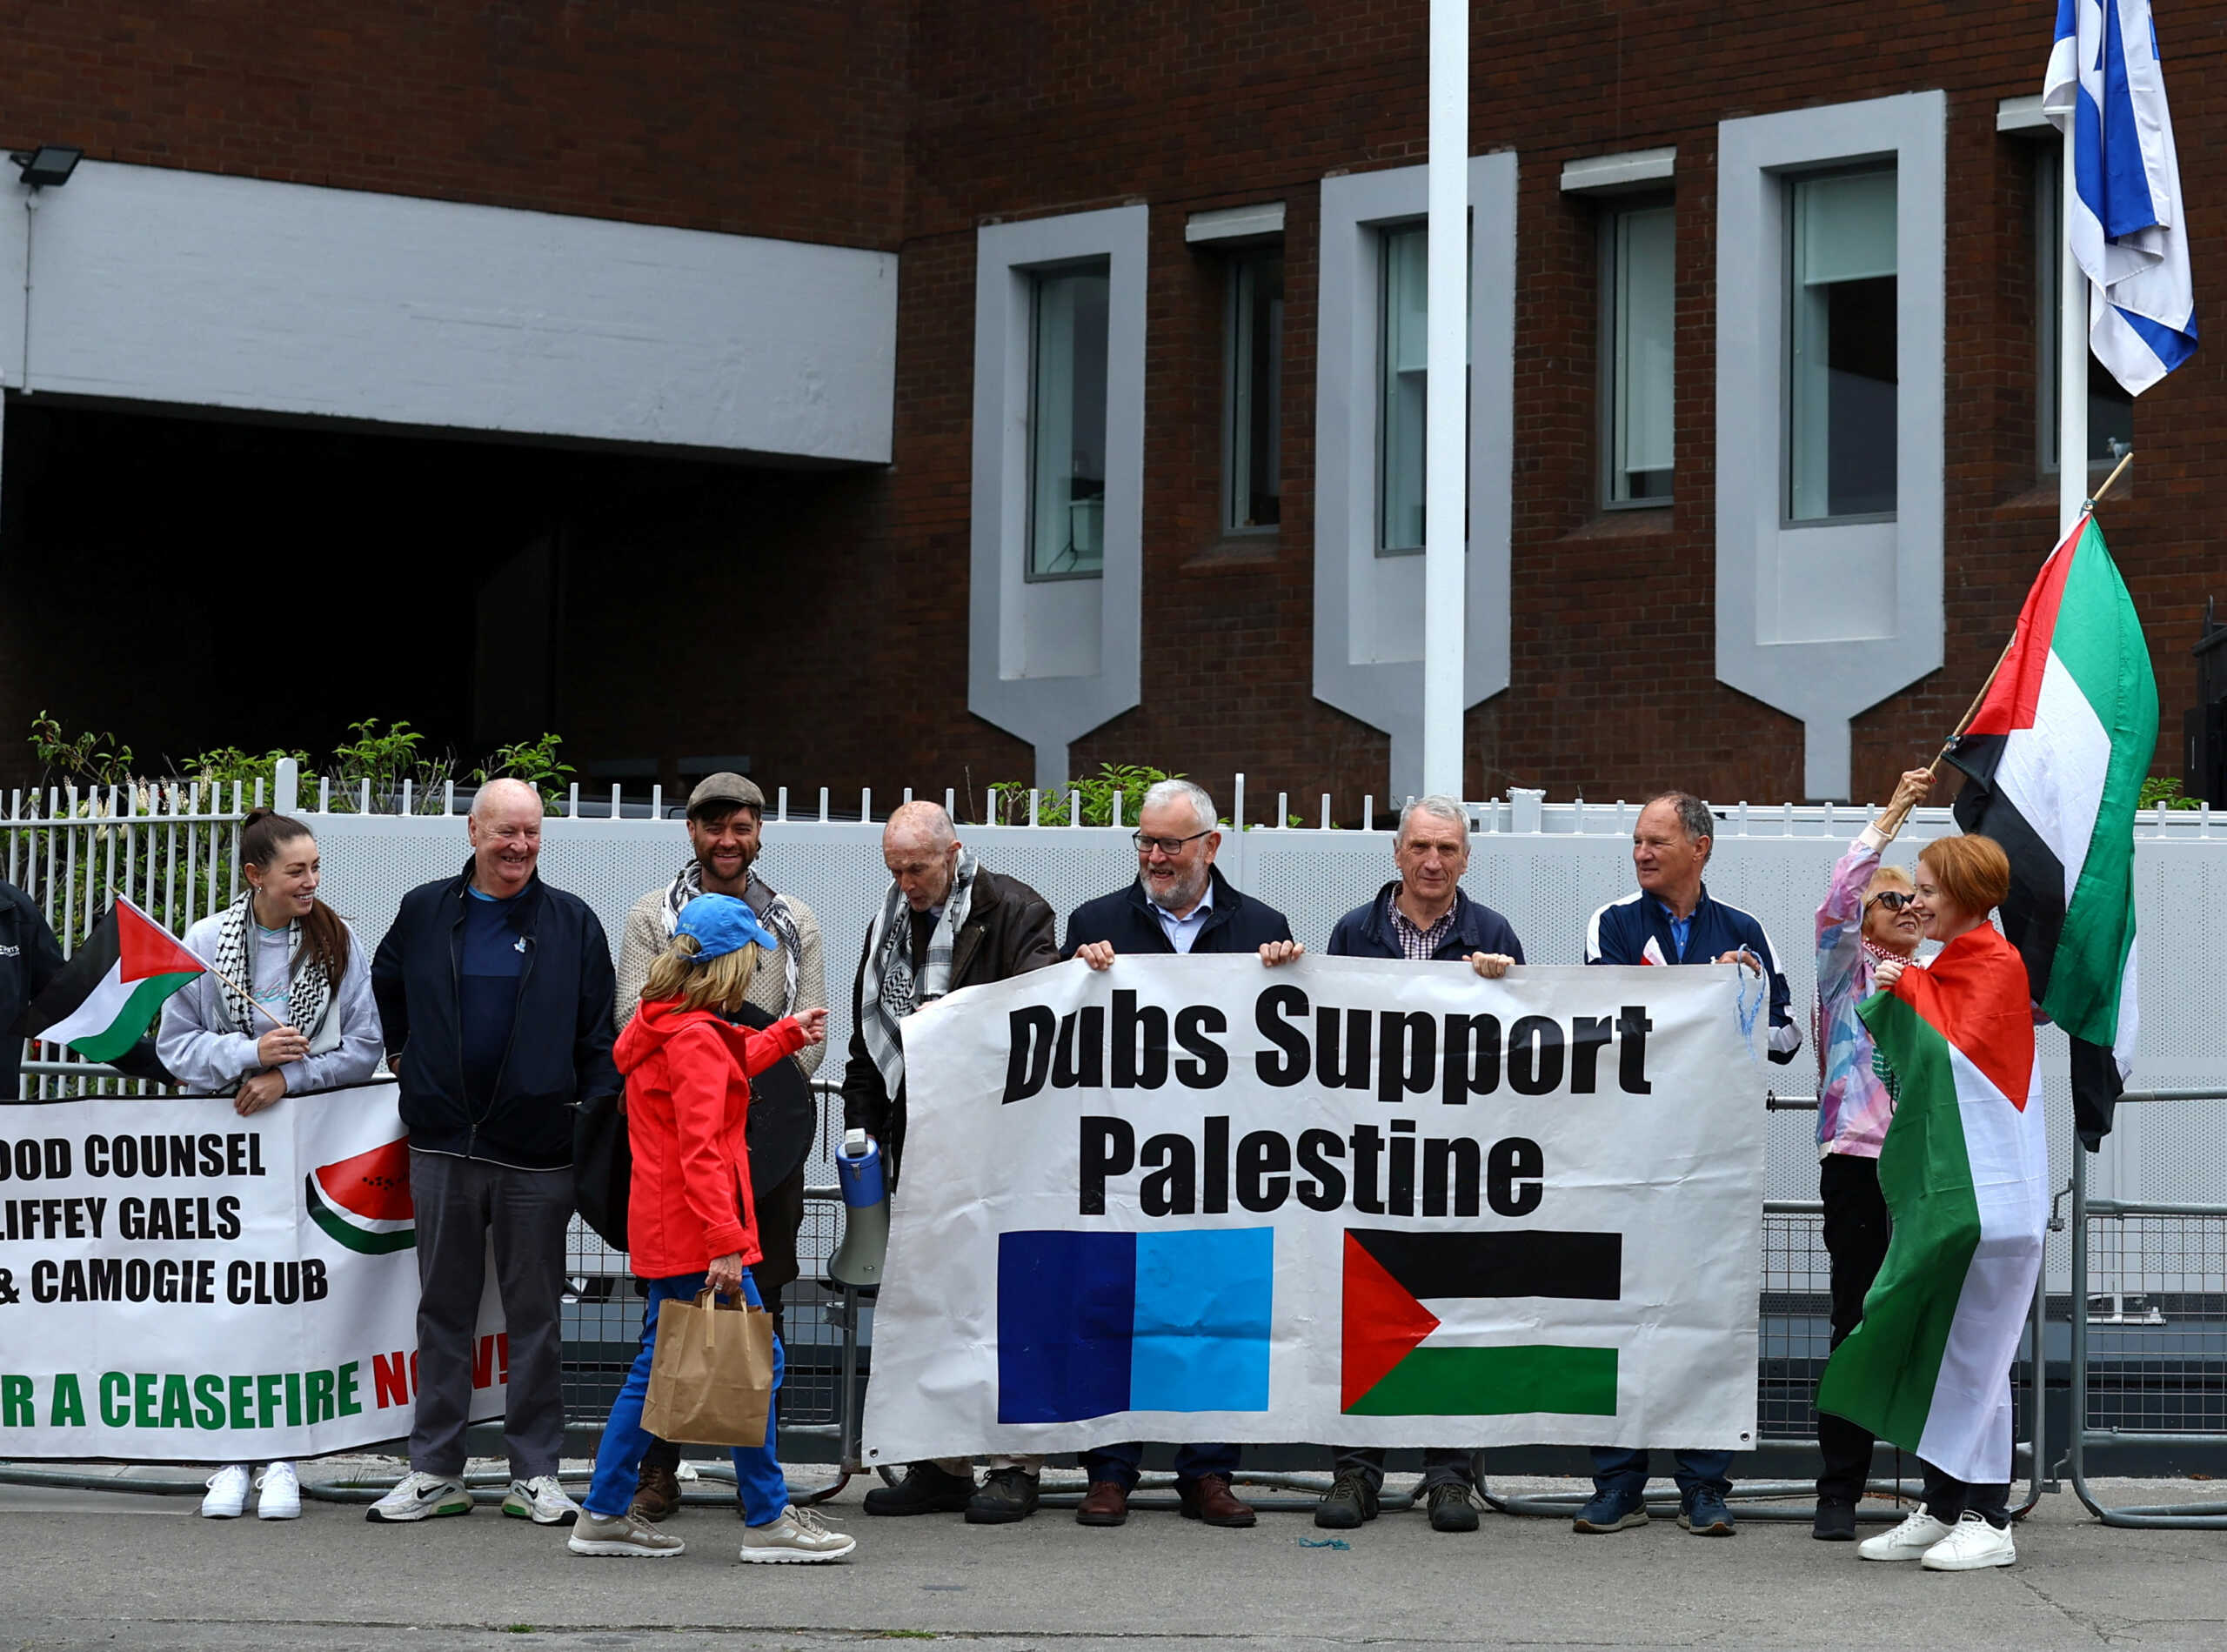 Η Ιρλανδία θα αναγνωρίσει παλαιστινιακό κράτος με βάση τα σύνορα του 1967